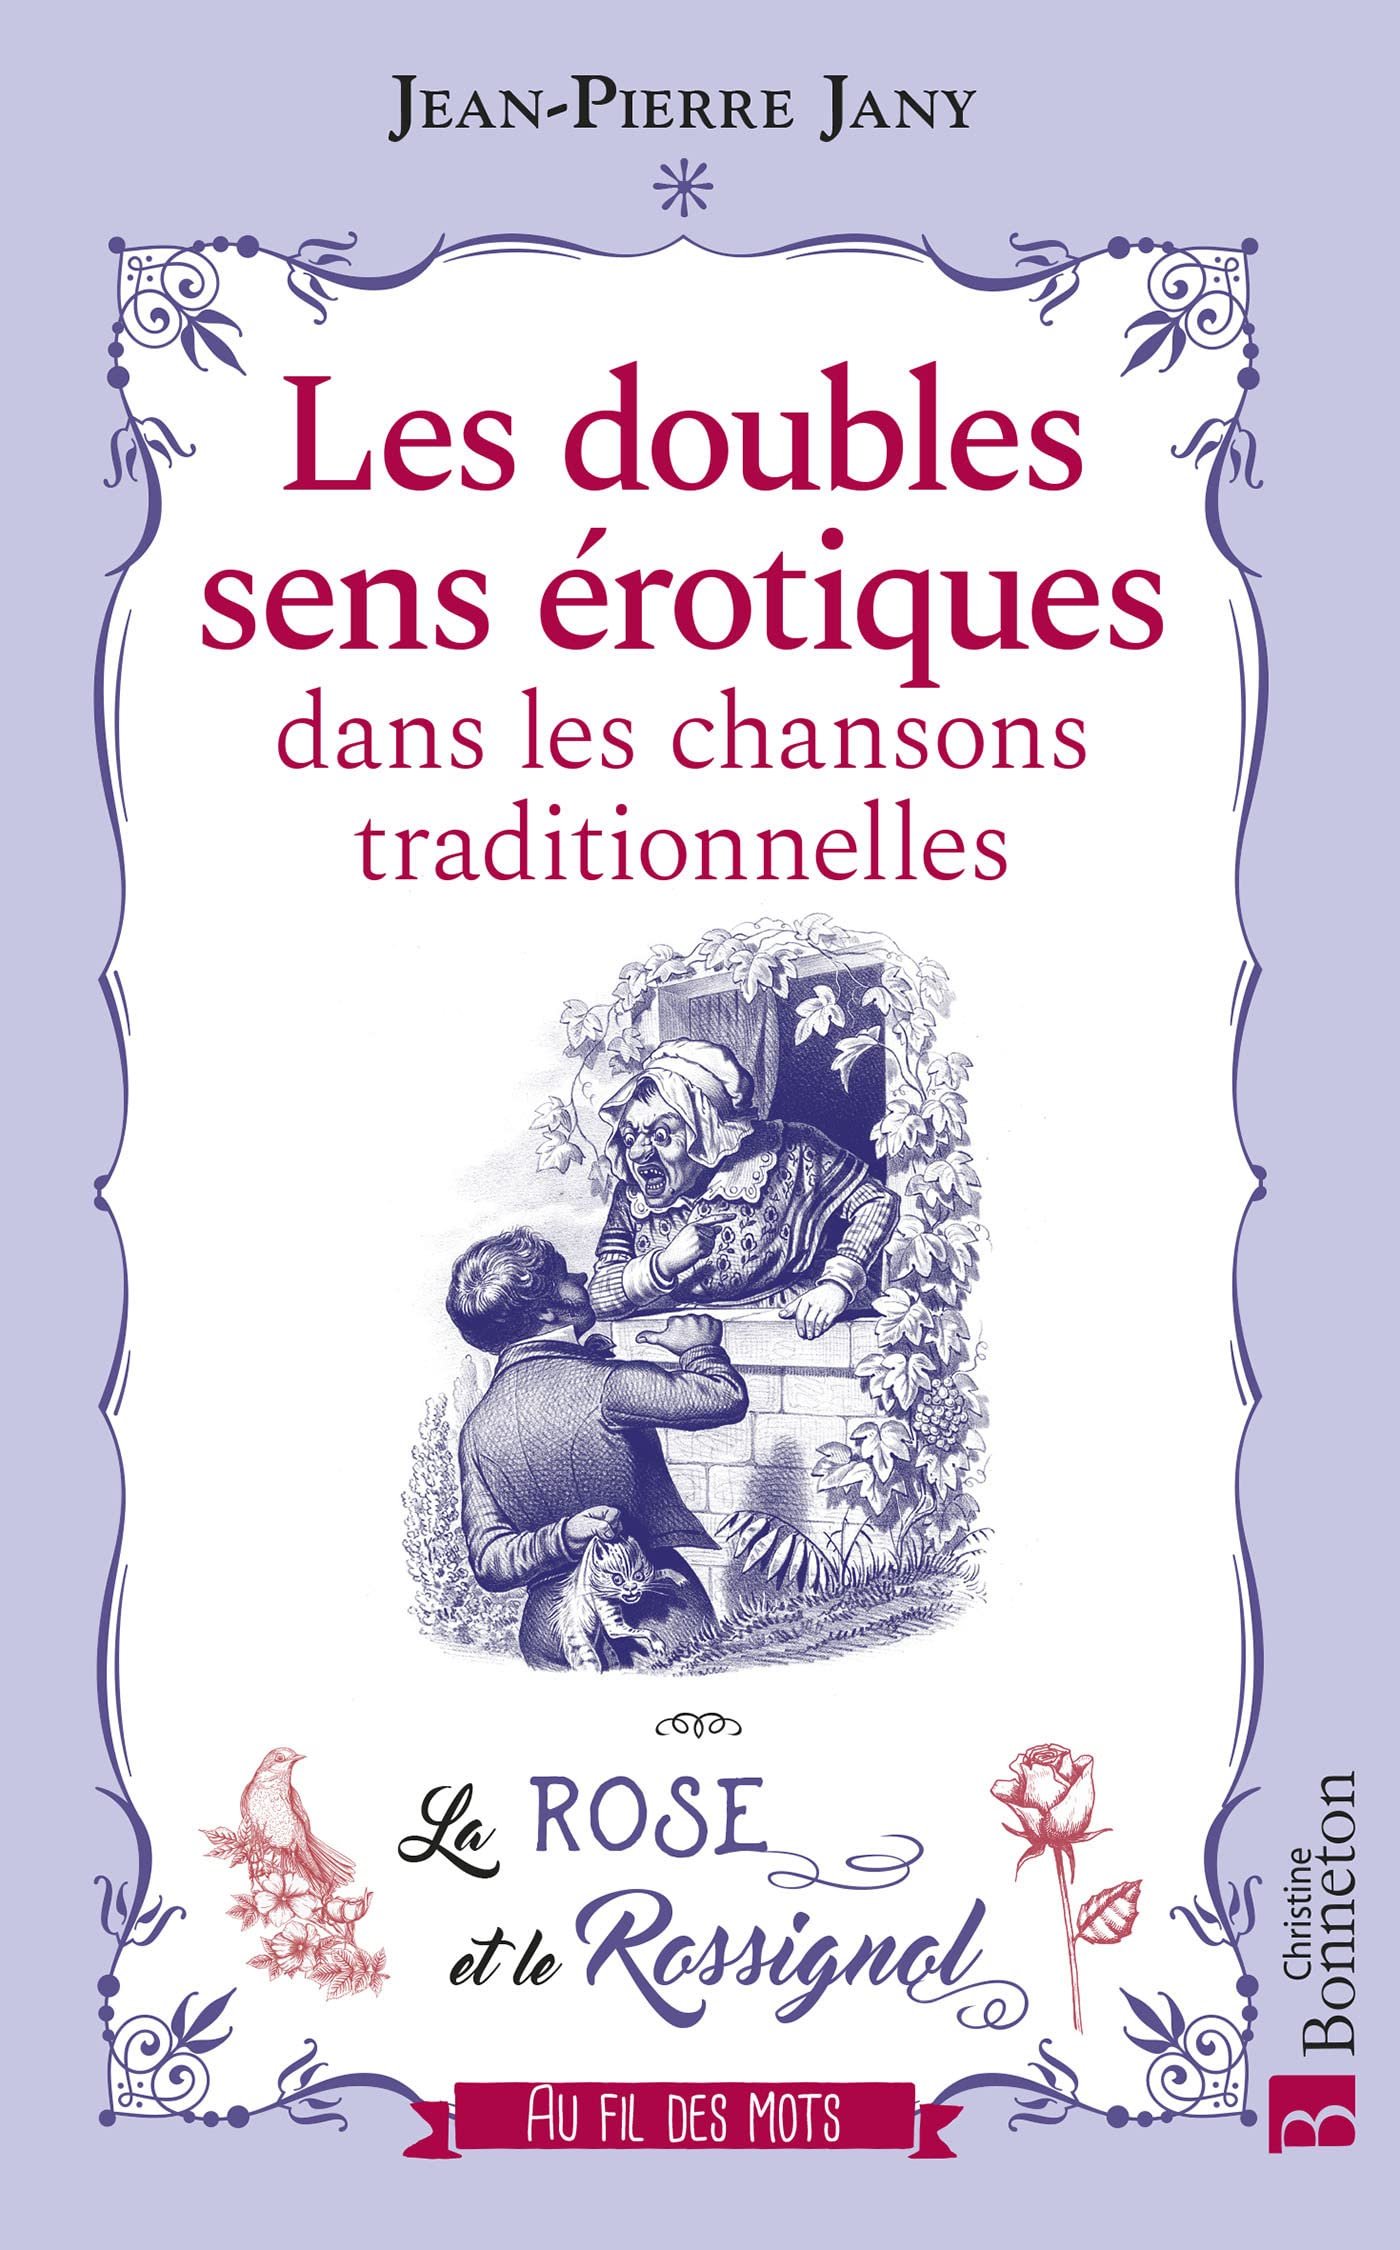 Jean-Pierre Jany – Les doubles sens érotiques dans les chansons traditionnelles: La Rose et le Rossignol